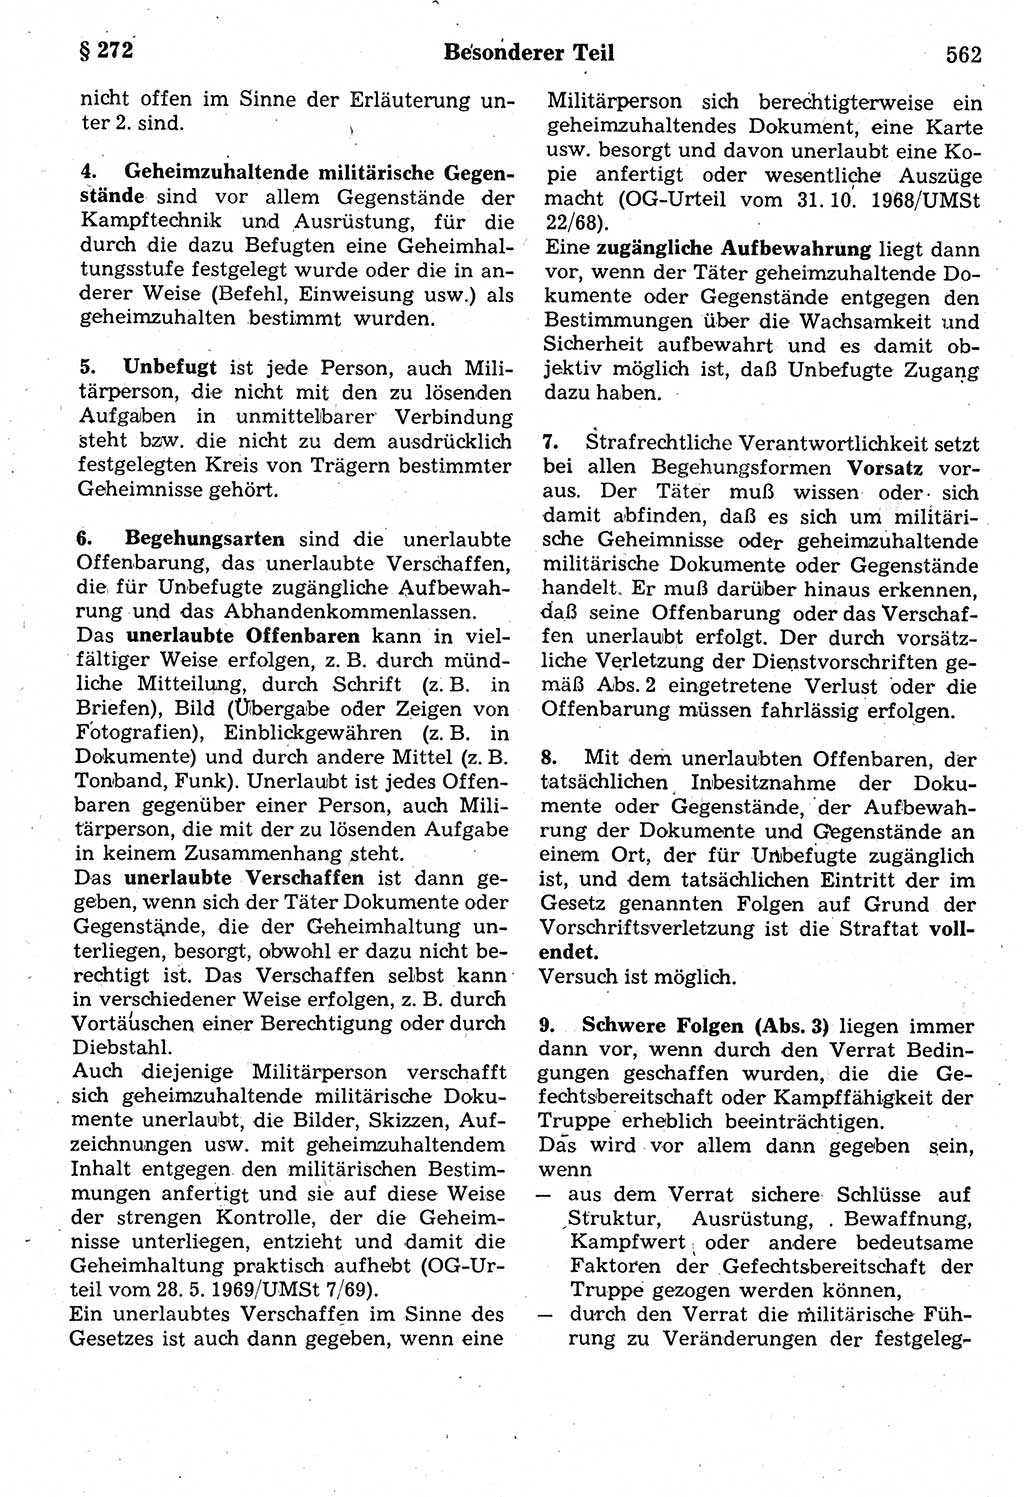 Strafrecht der Deutschen Demokratischen Republik (DDR), Kommentar zum Strafgesetzbuch (StGB) 1987, Seite 562 (Strafr. DDR Komm. StGB 1987, S. 562)